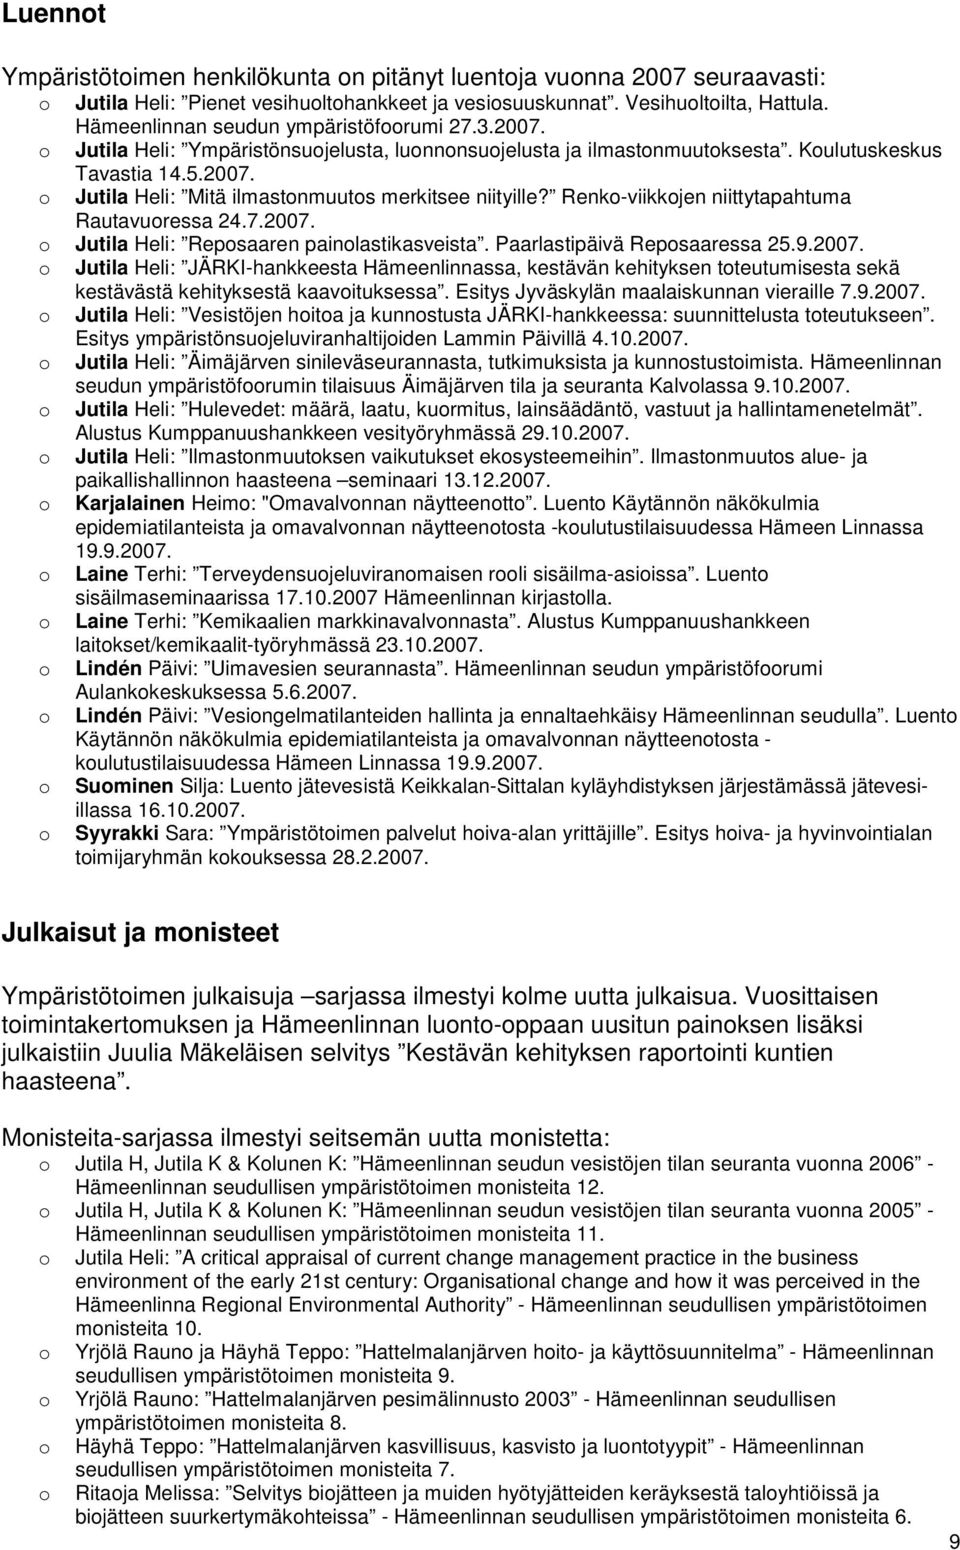 Renk-viikkjen niittytapahtuma Rautavuressa 24.7.2007. Jutila Heli: Repsaaren painlastikasveista. Paarlastipäivä Repsaaressa 25.9.2007. Jutila Heli: JÄRKI-hankkeesta Hämeenlinnassa, kestävän kehityksen tteutumisesta sekä kestävästä kehityksestä kaavituksessa.